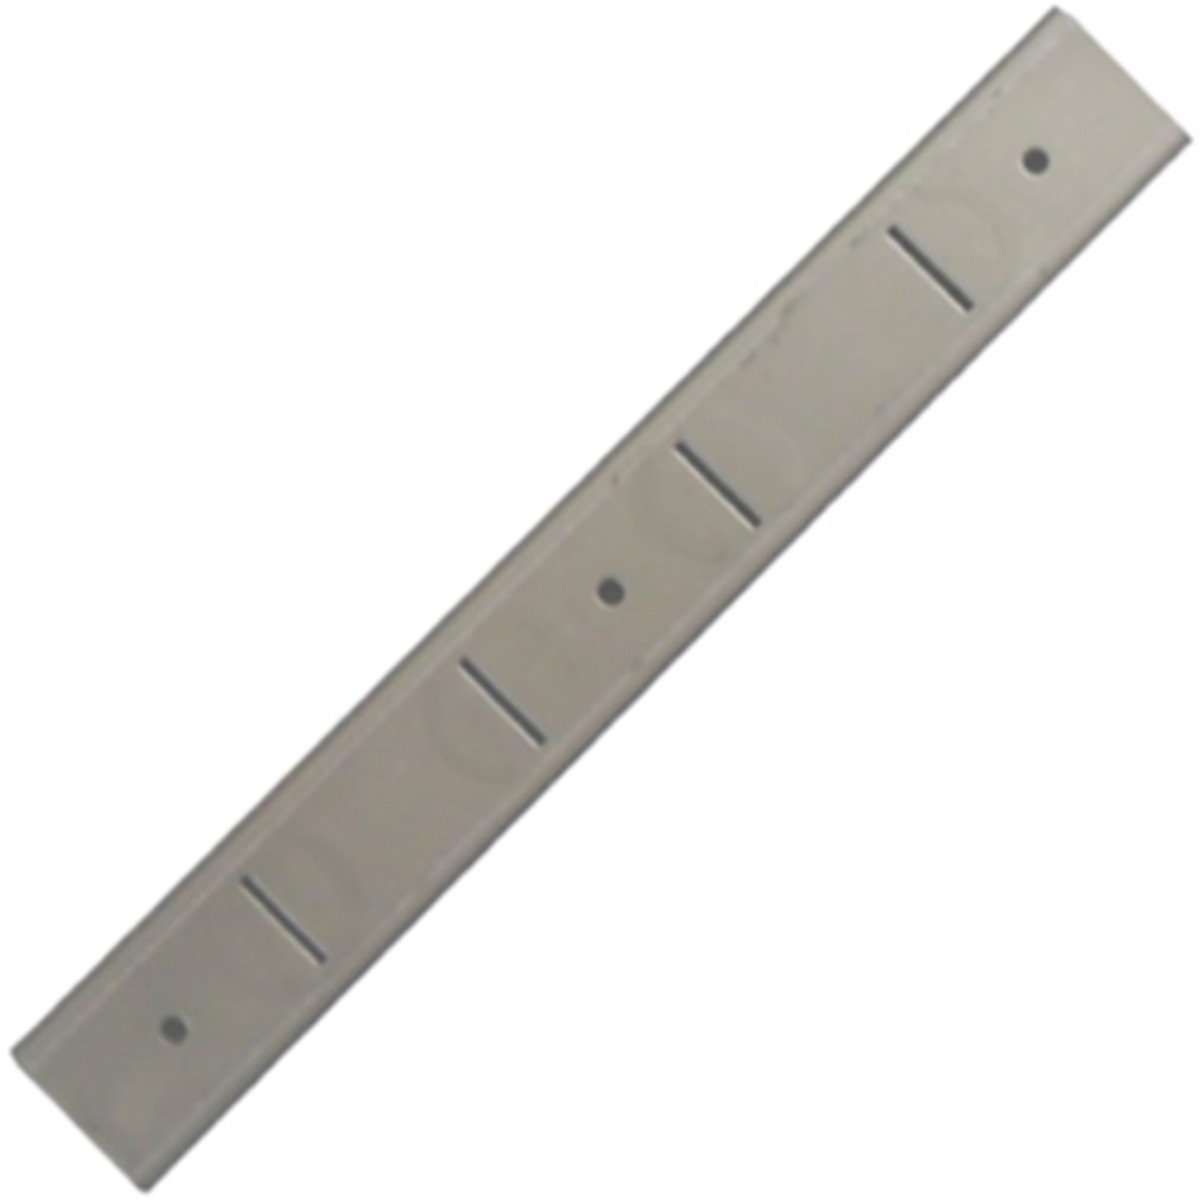 INOMAK Shelf bracket for Wall shelves - RO300